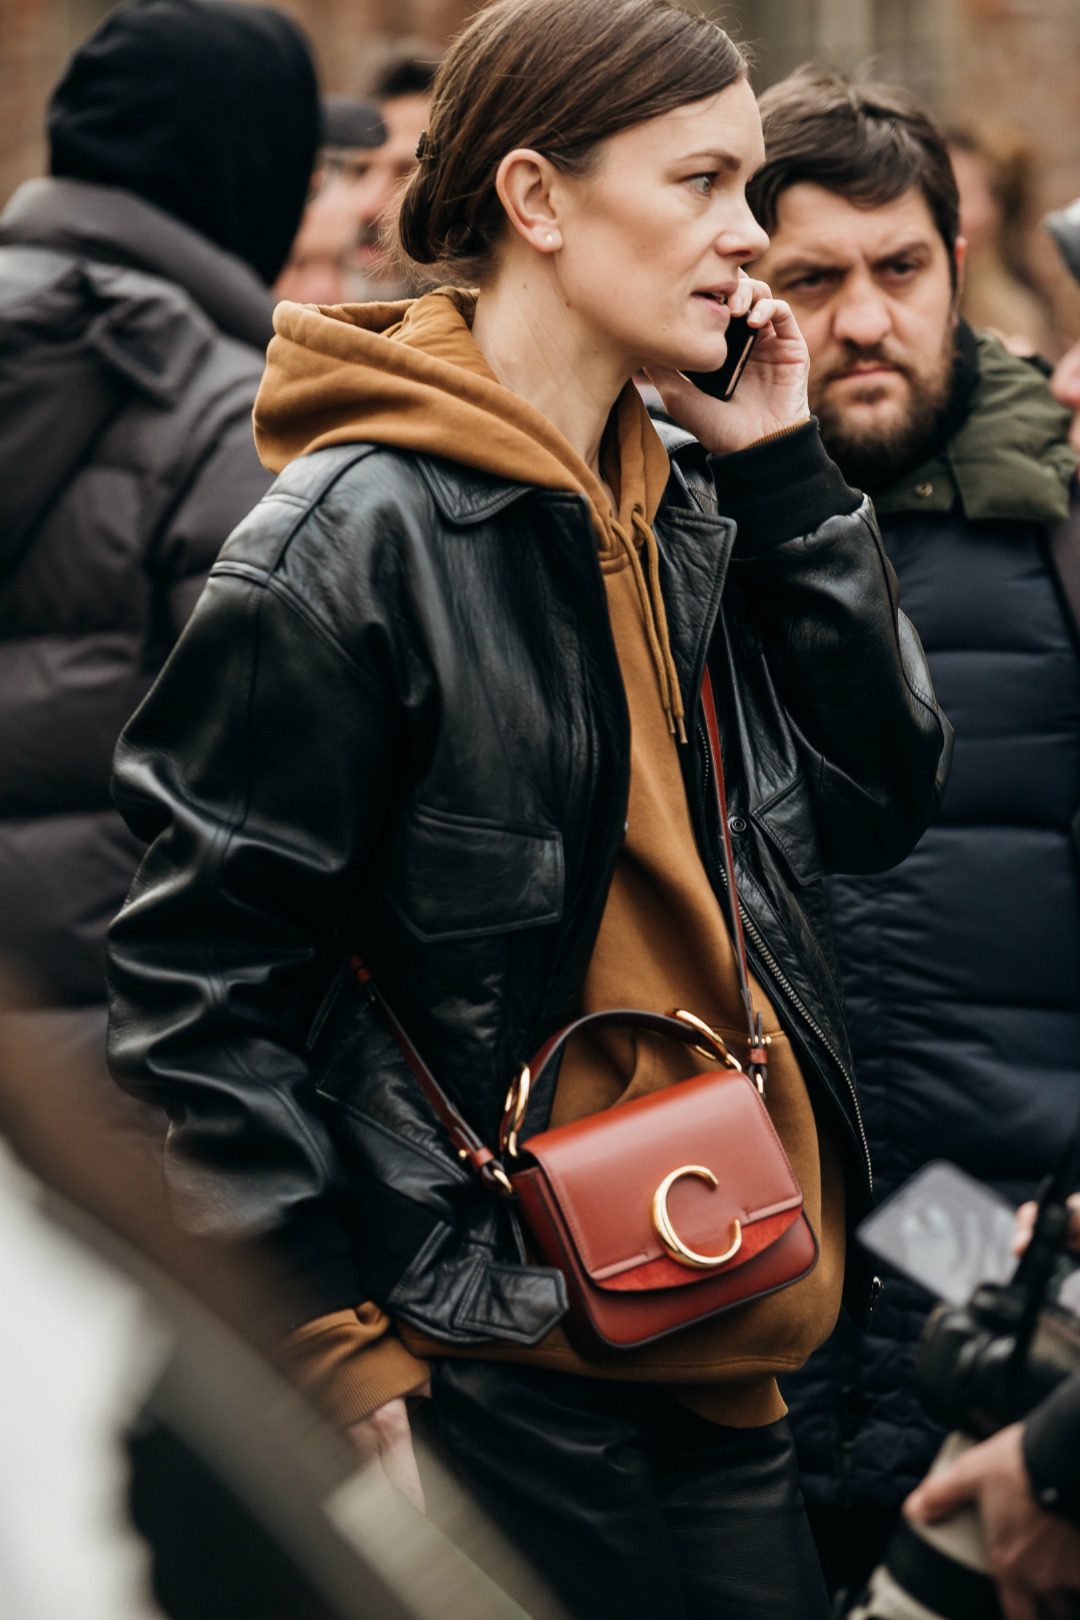 Sokak Stili: 2019-20 Sonbahar/Kış Milano Moda Haftası 4. Gün